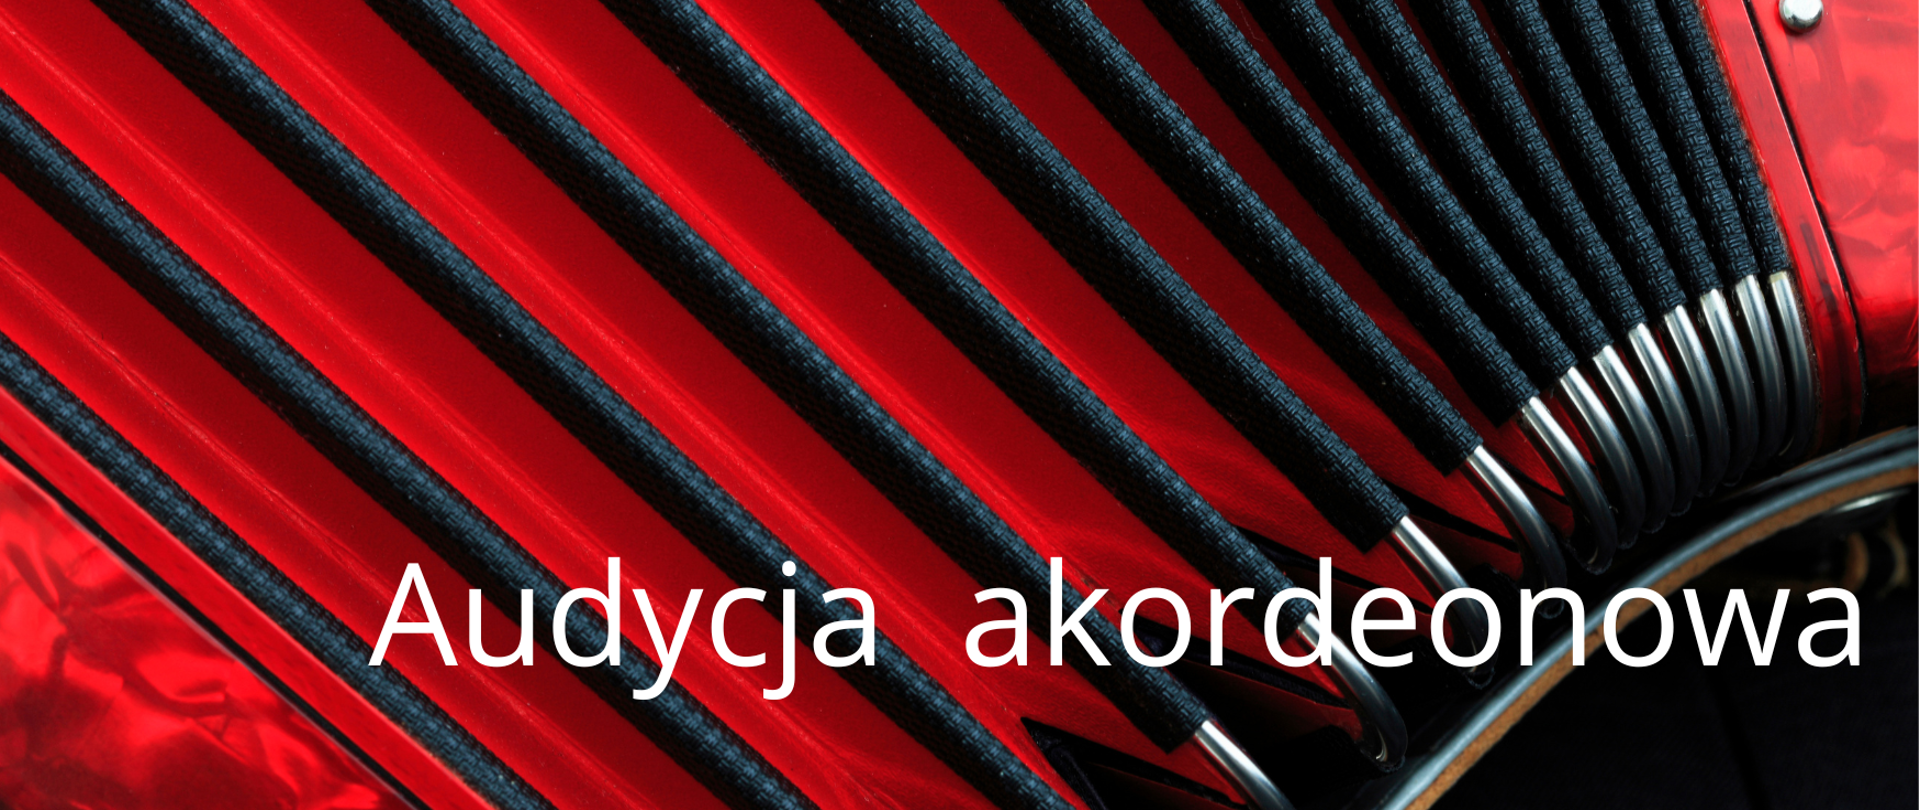 Plakat na tle rozłożonego czerwonego akordeonu z napisem audycja akordeonowa